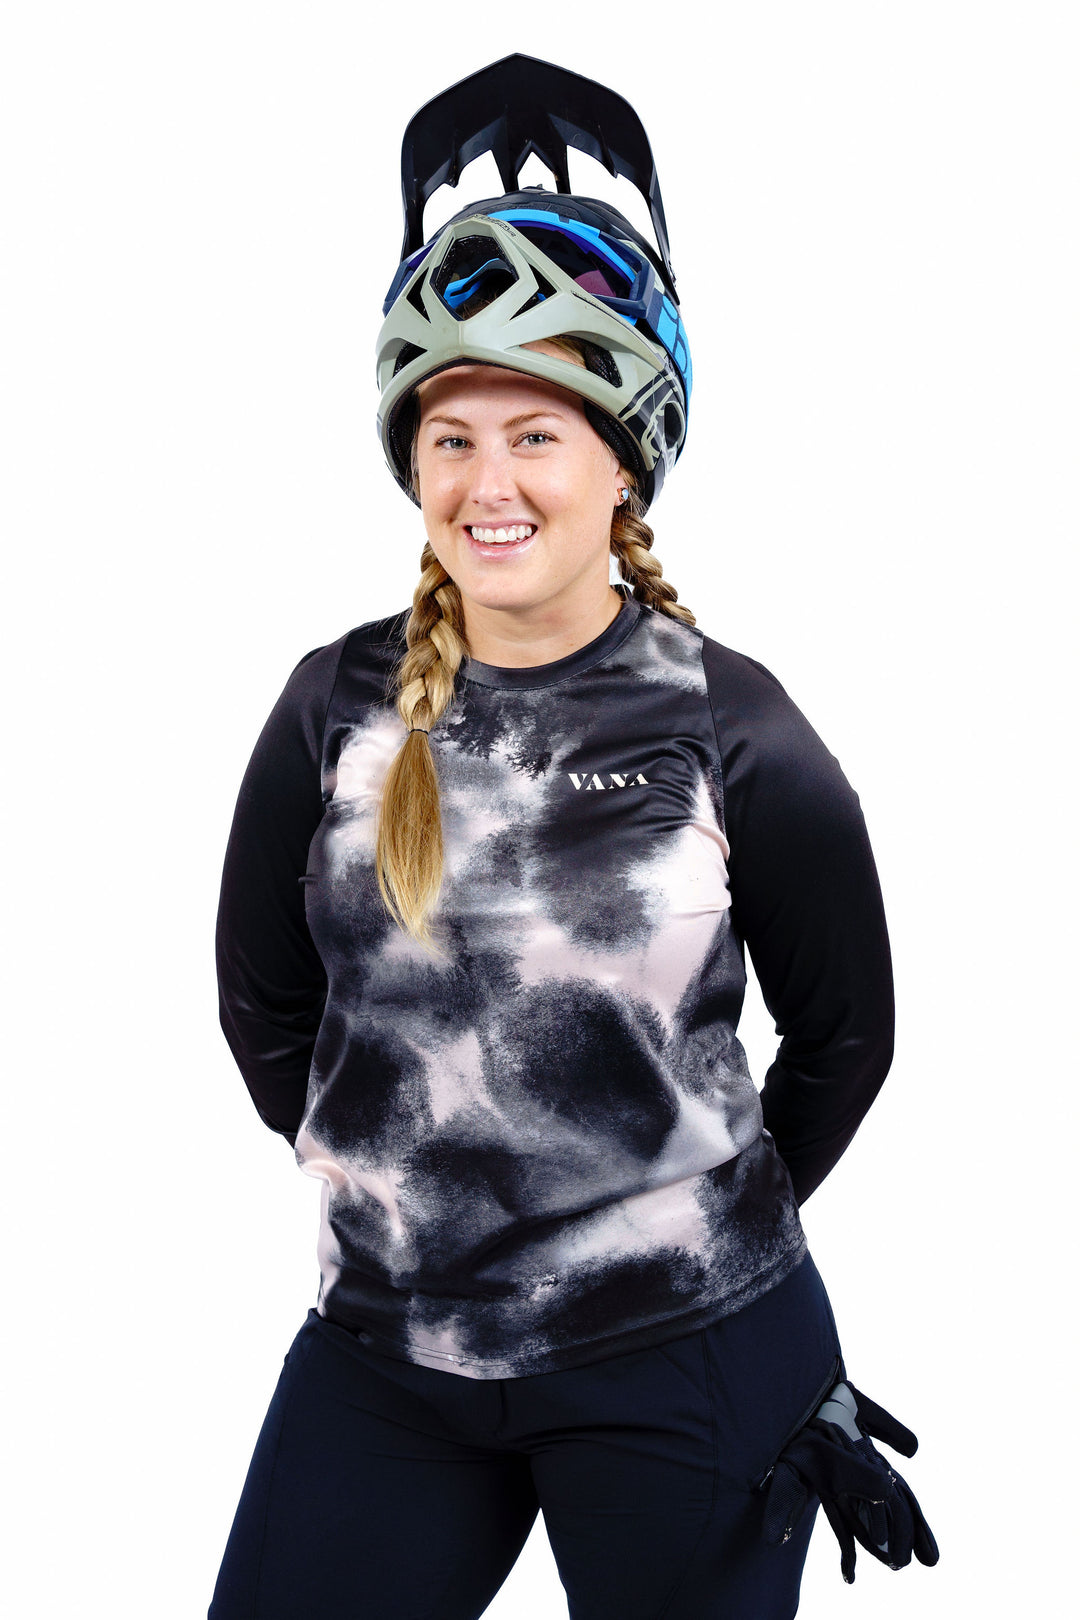 'Storm' Women's Mountain Bike Jersey - long sleeve, oversized fit